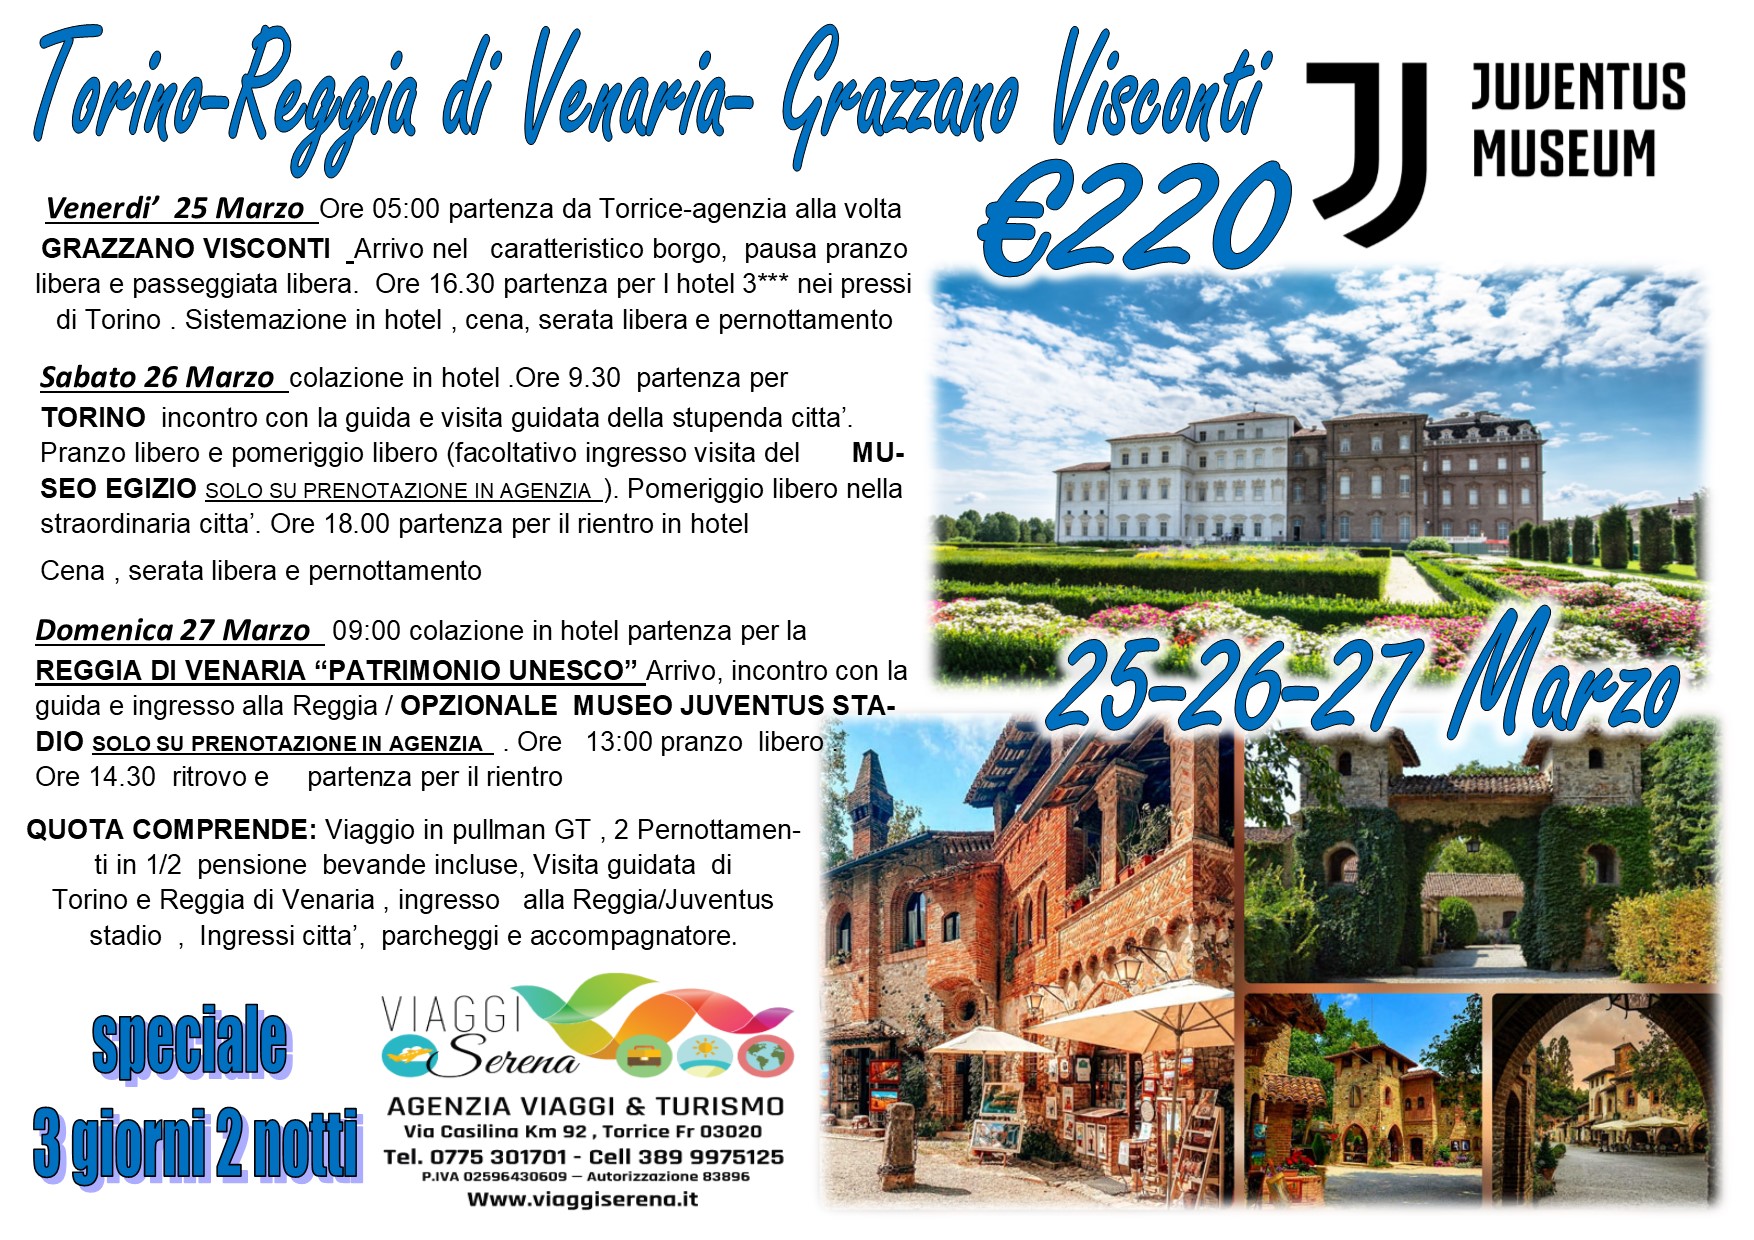 Viaggi di Gruppo: Torino, Reggia di Venaria, Grazzano Visconti e Museo Juventus 25-26-27 Marzo € 220,00